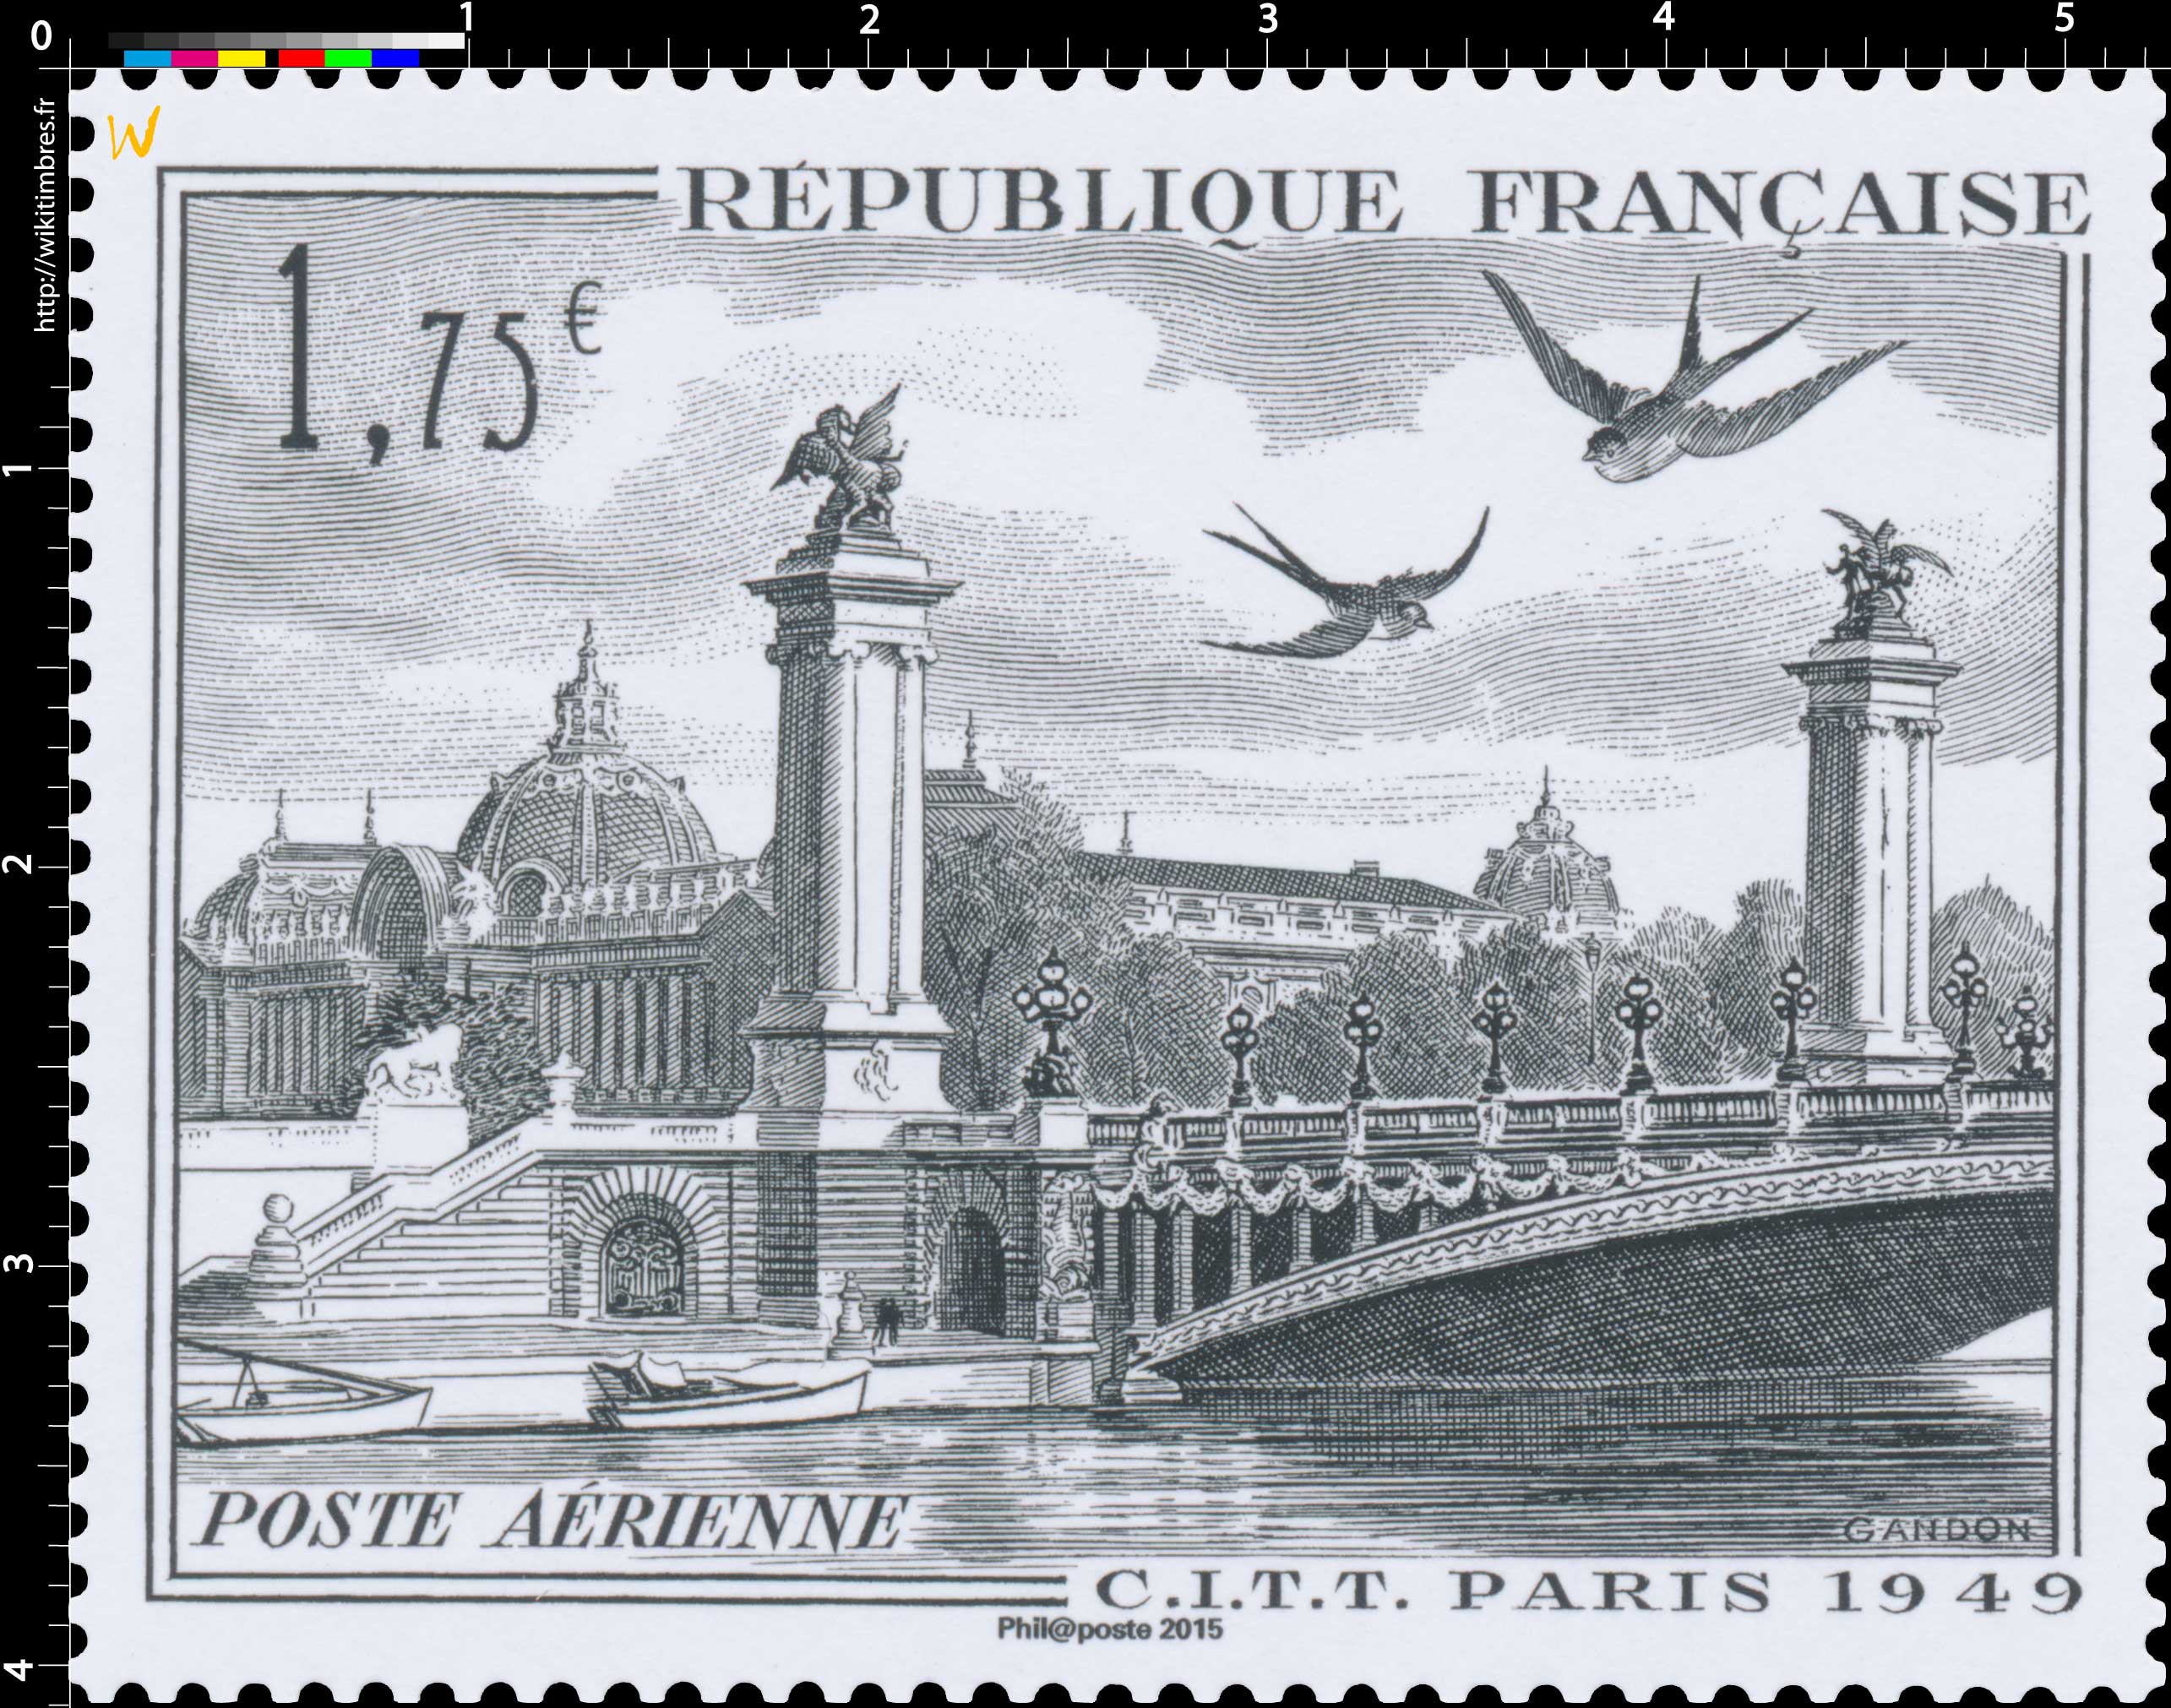 2015 C.I.T.T PARIS 1949